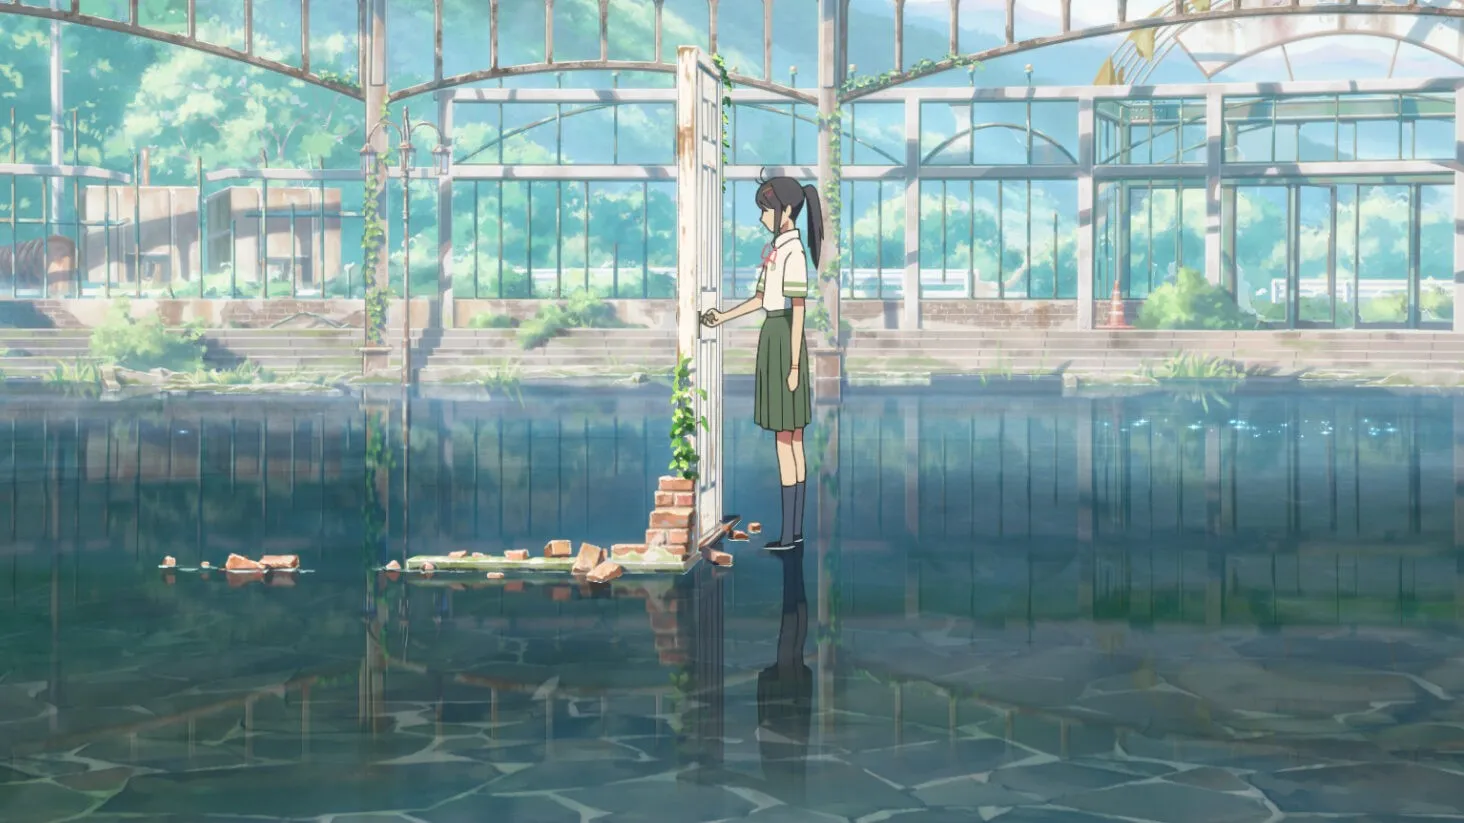 Review anime Khóa Chặt Cửa Nào Suzume: Trọn vẹn cảm xúc, không thể rời mắt vì quá đẹp